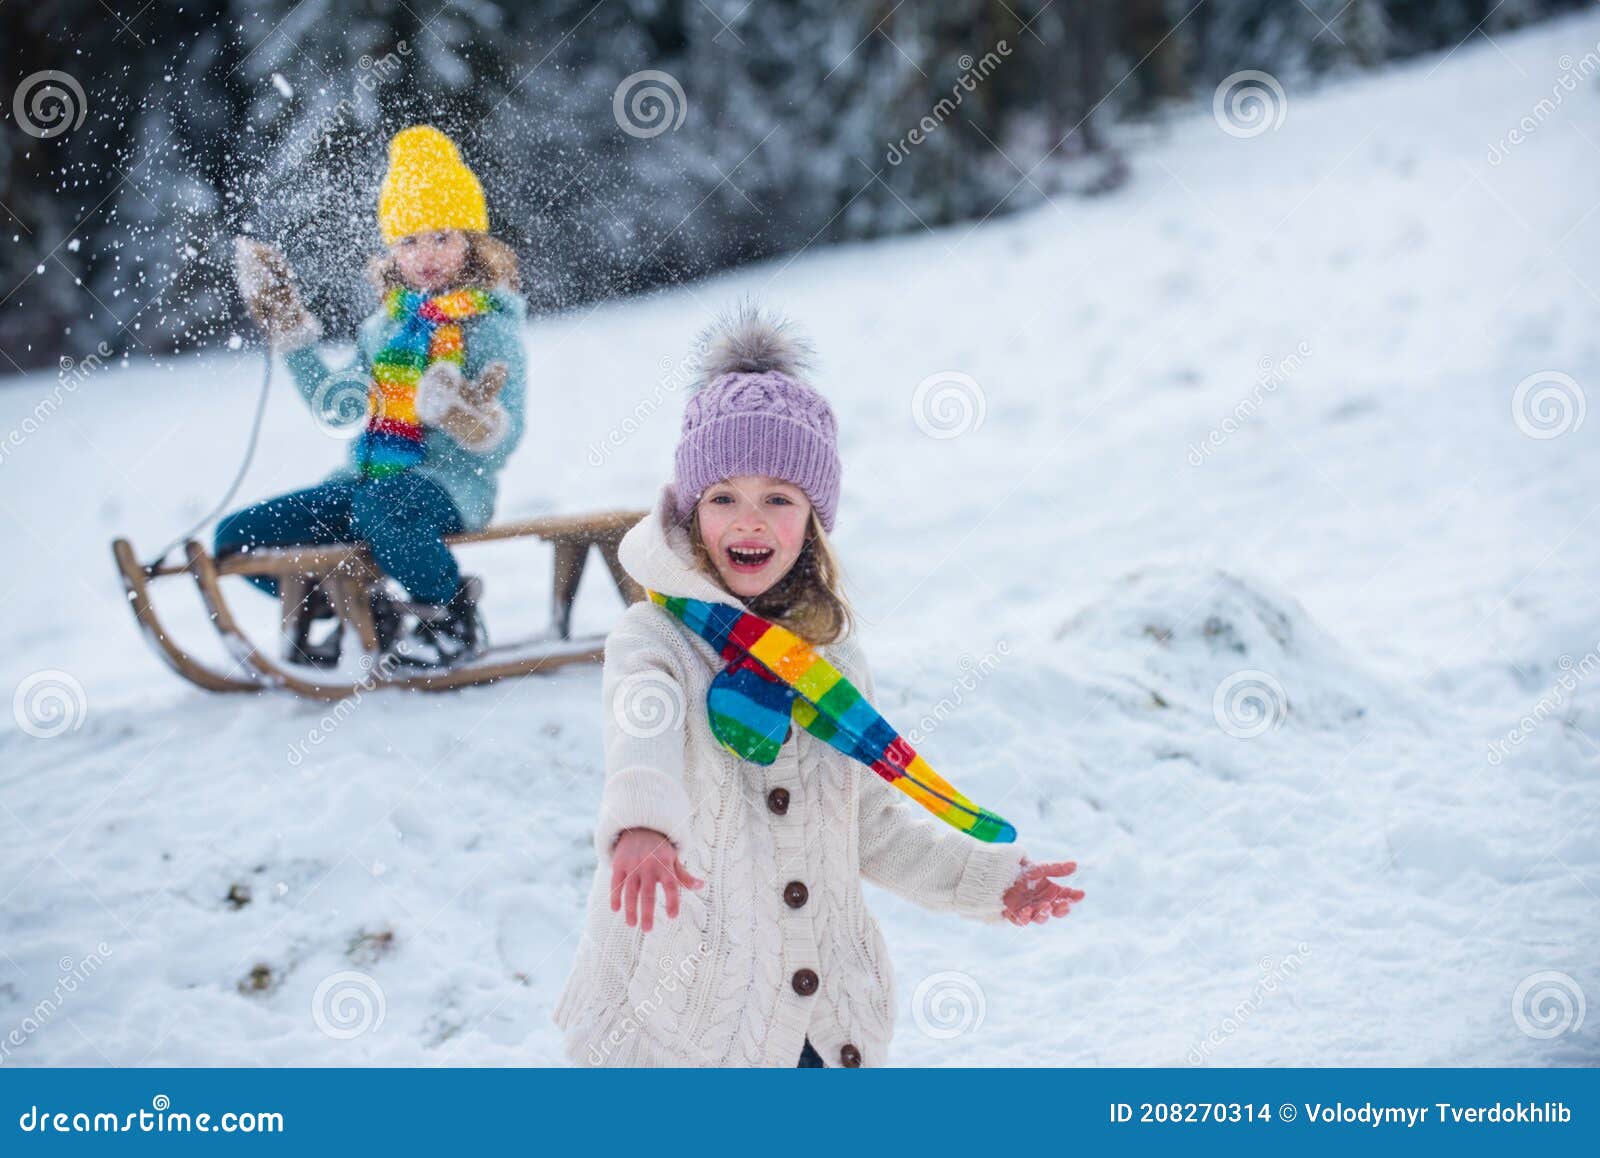 https://thumbs.dreamstime.com/z/ni%C3%B1os-con-ropa-de-colores-jugando-nieve-al-aire-libre-durante-la-nevada-ocio-activo-en-invierno-d%C3%ADas-fr%C3%ADos-208270314.jpg